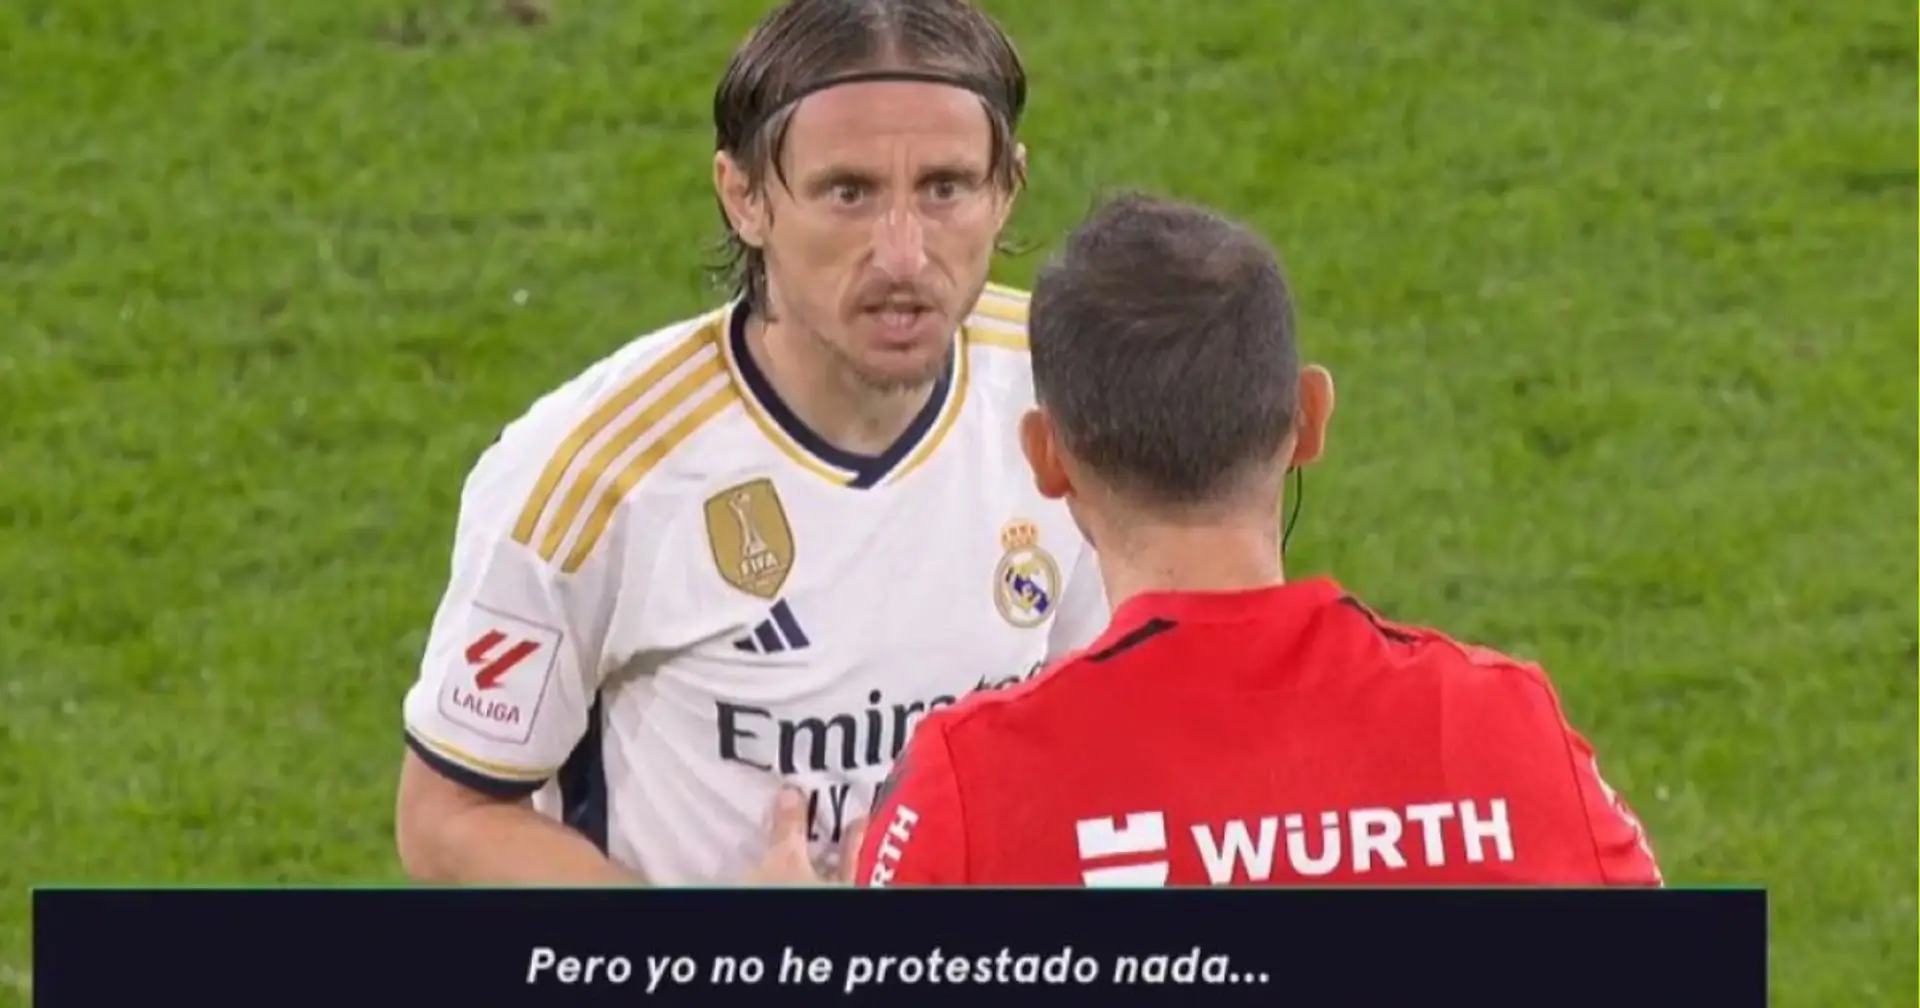 '¿No puedo hablar?': Lo que dijo Luka Modric al árbitro en el partido ante el Cádiz captado por los micrófonos